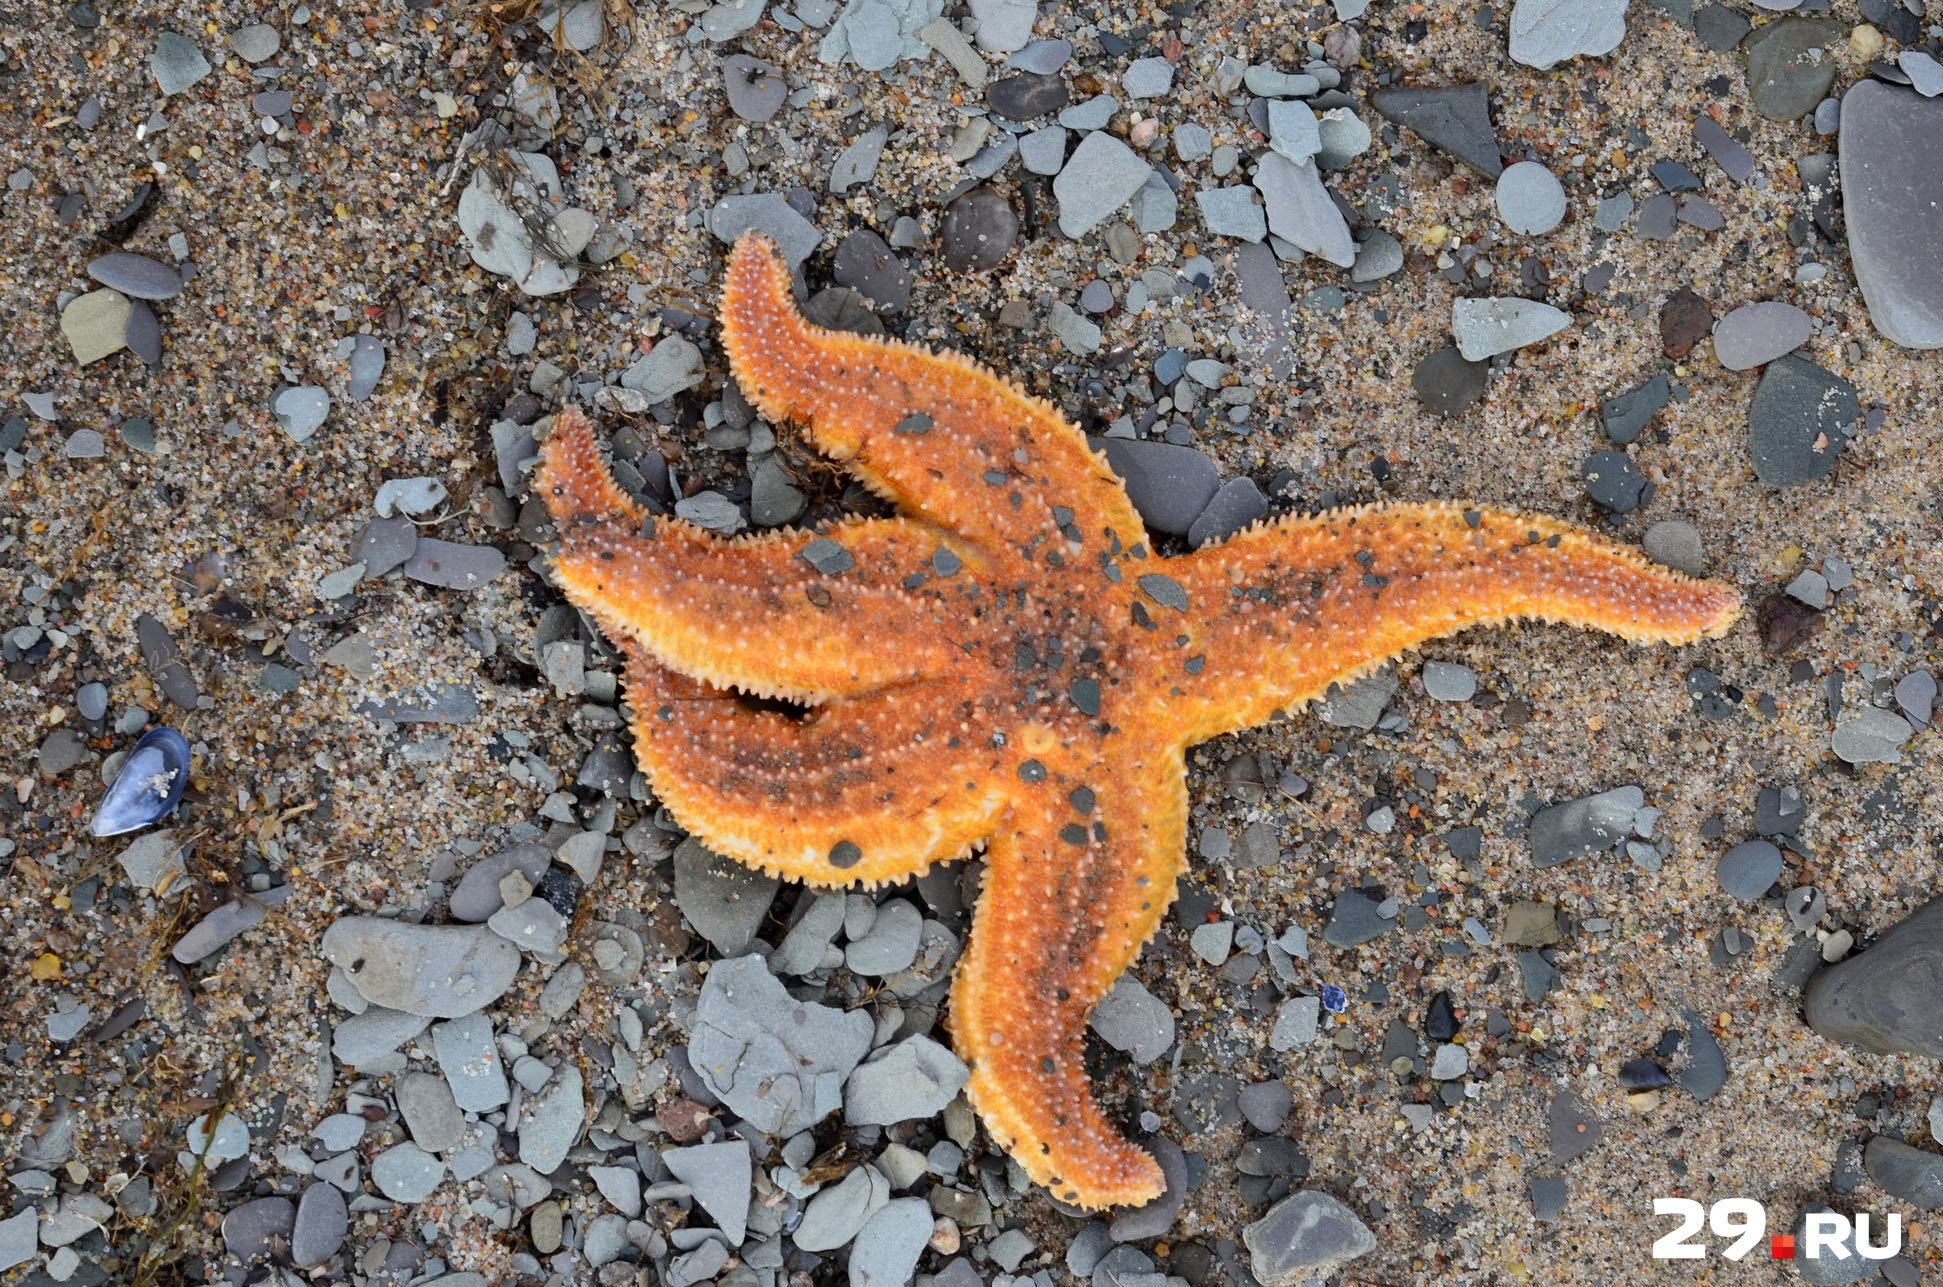 Морские звезды – тоже частый улов